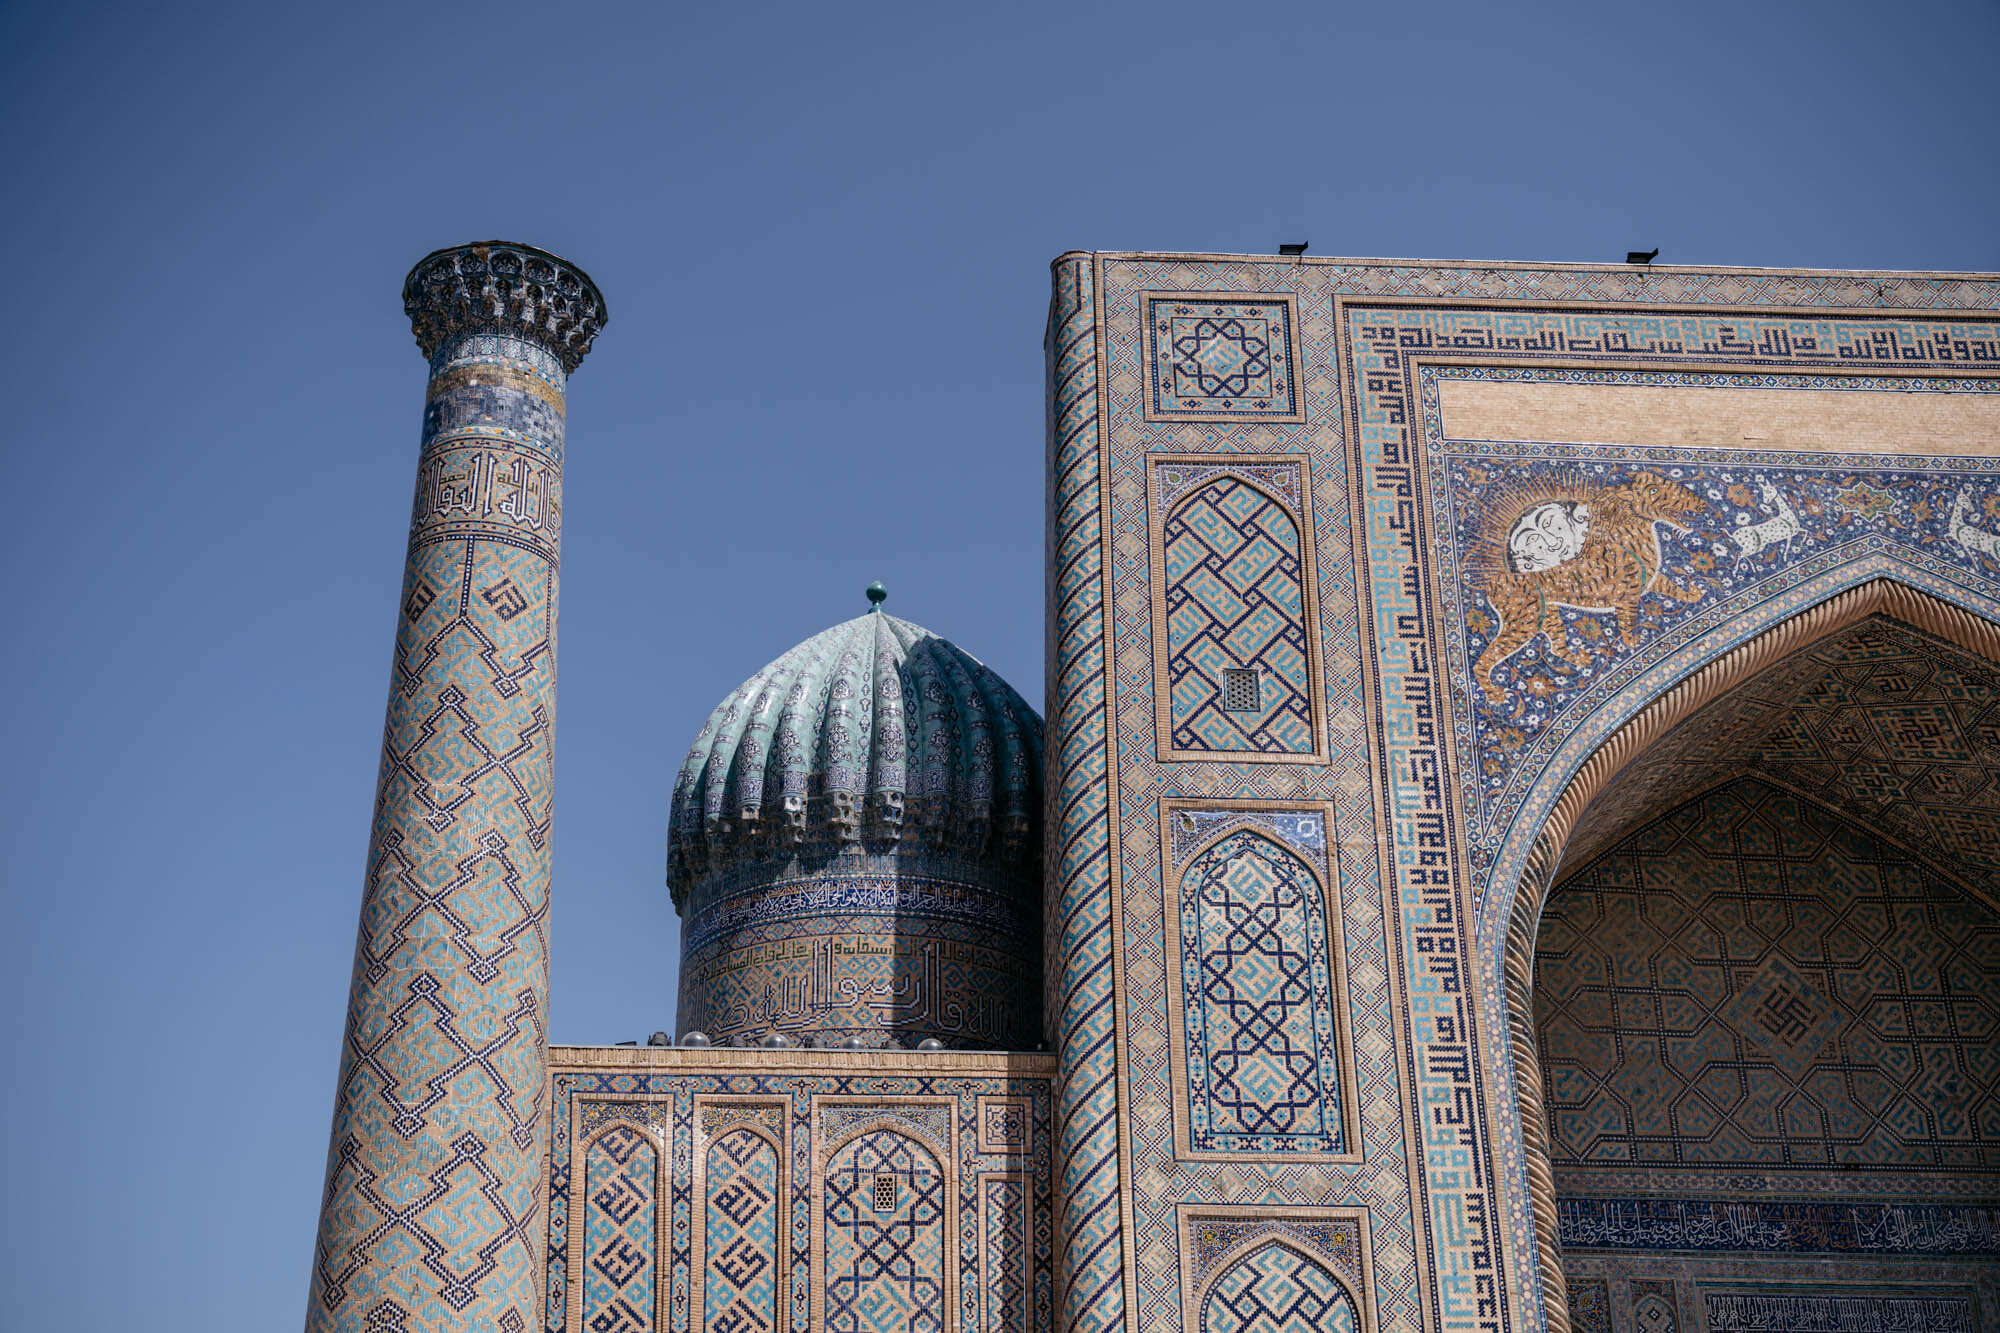  The Sher-Dor Madrasah, Samarkand 